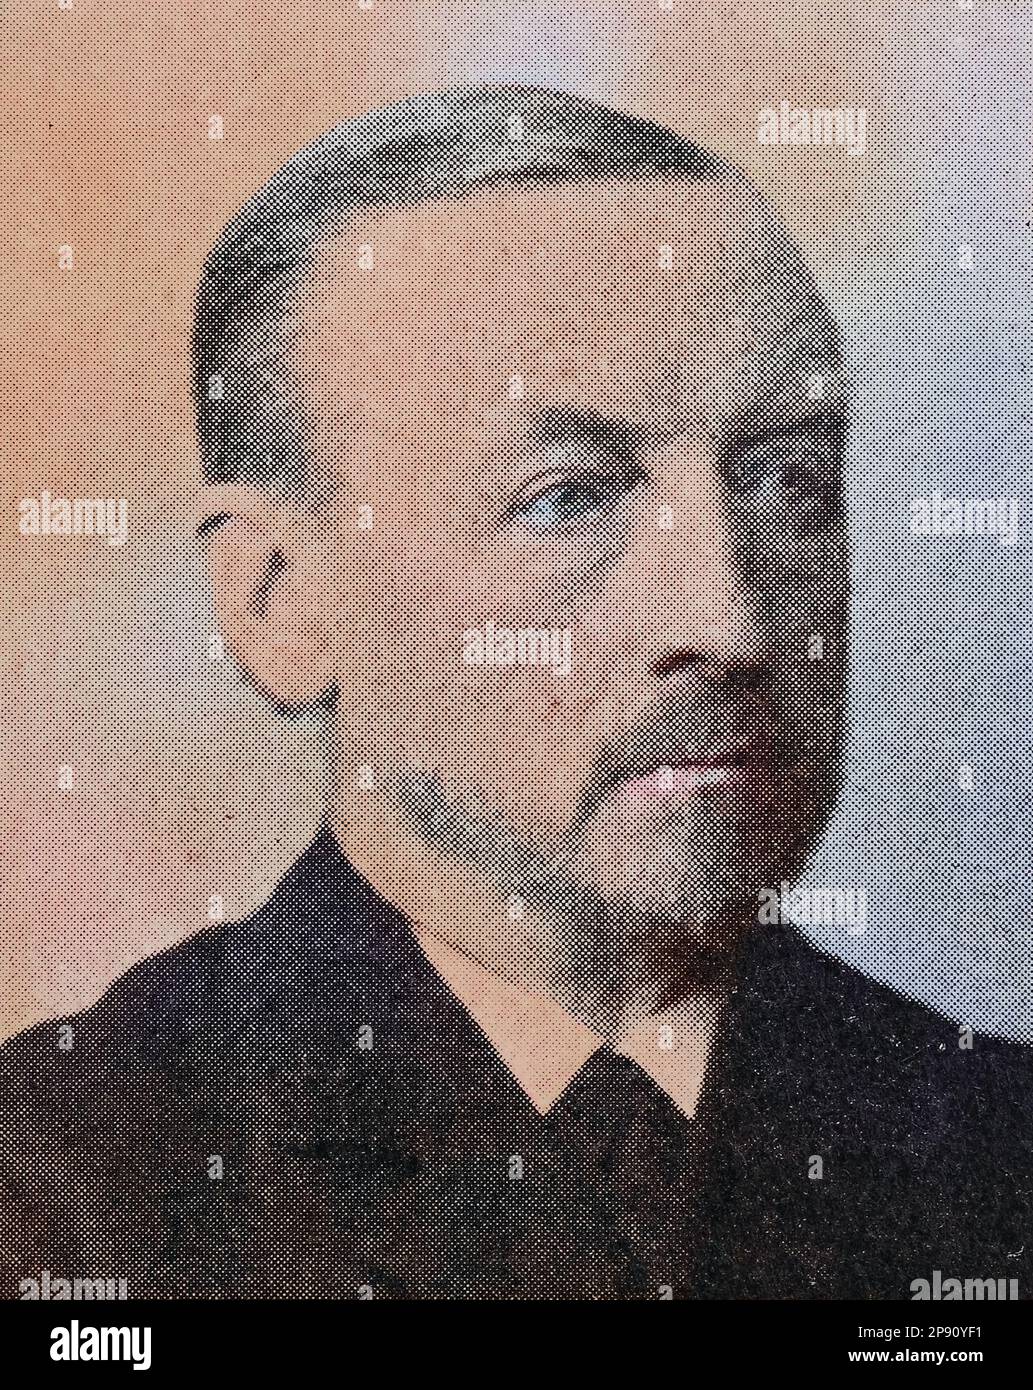 Alexander Christian Leopold Conze (10. Dezember 1831 - 19. Juli 1914) war ein deutscher Archäologe und Hochschullehrer, Historisch, digital restaurierte Reproduktion von einer Vorlage aus dem 19. Jahrhundert Stock Photo